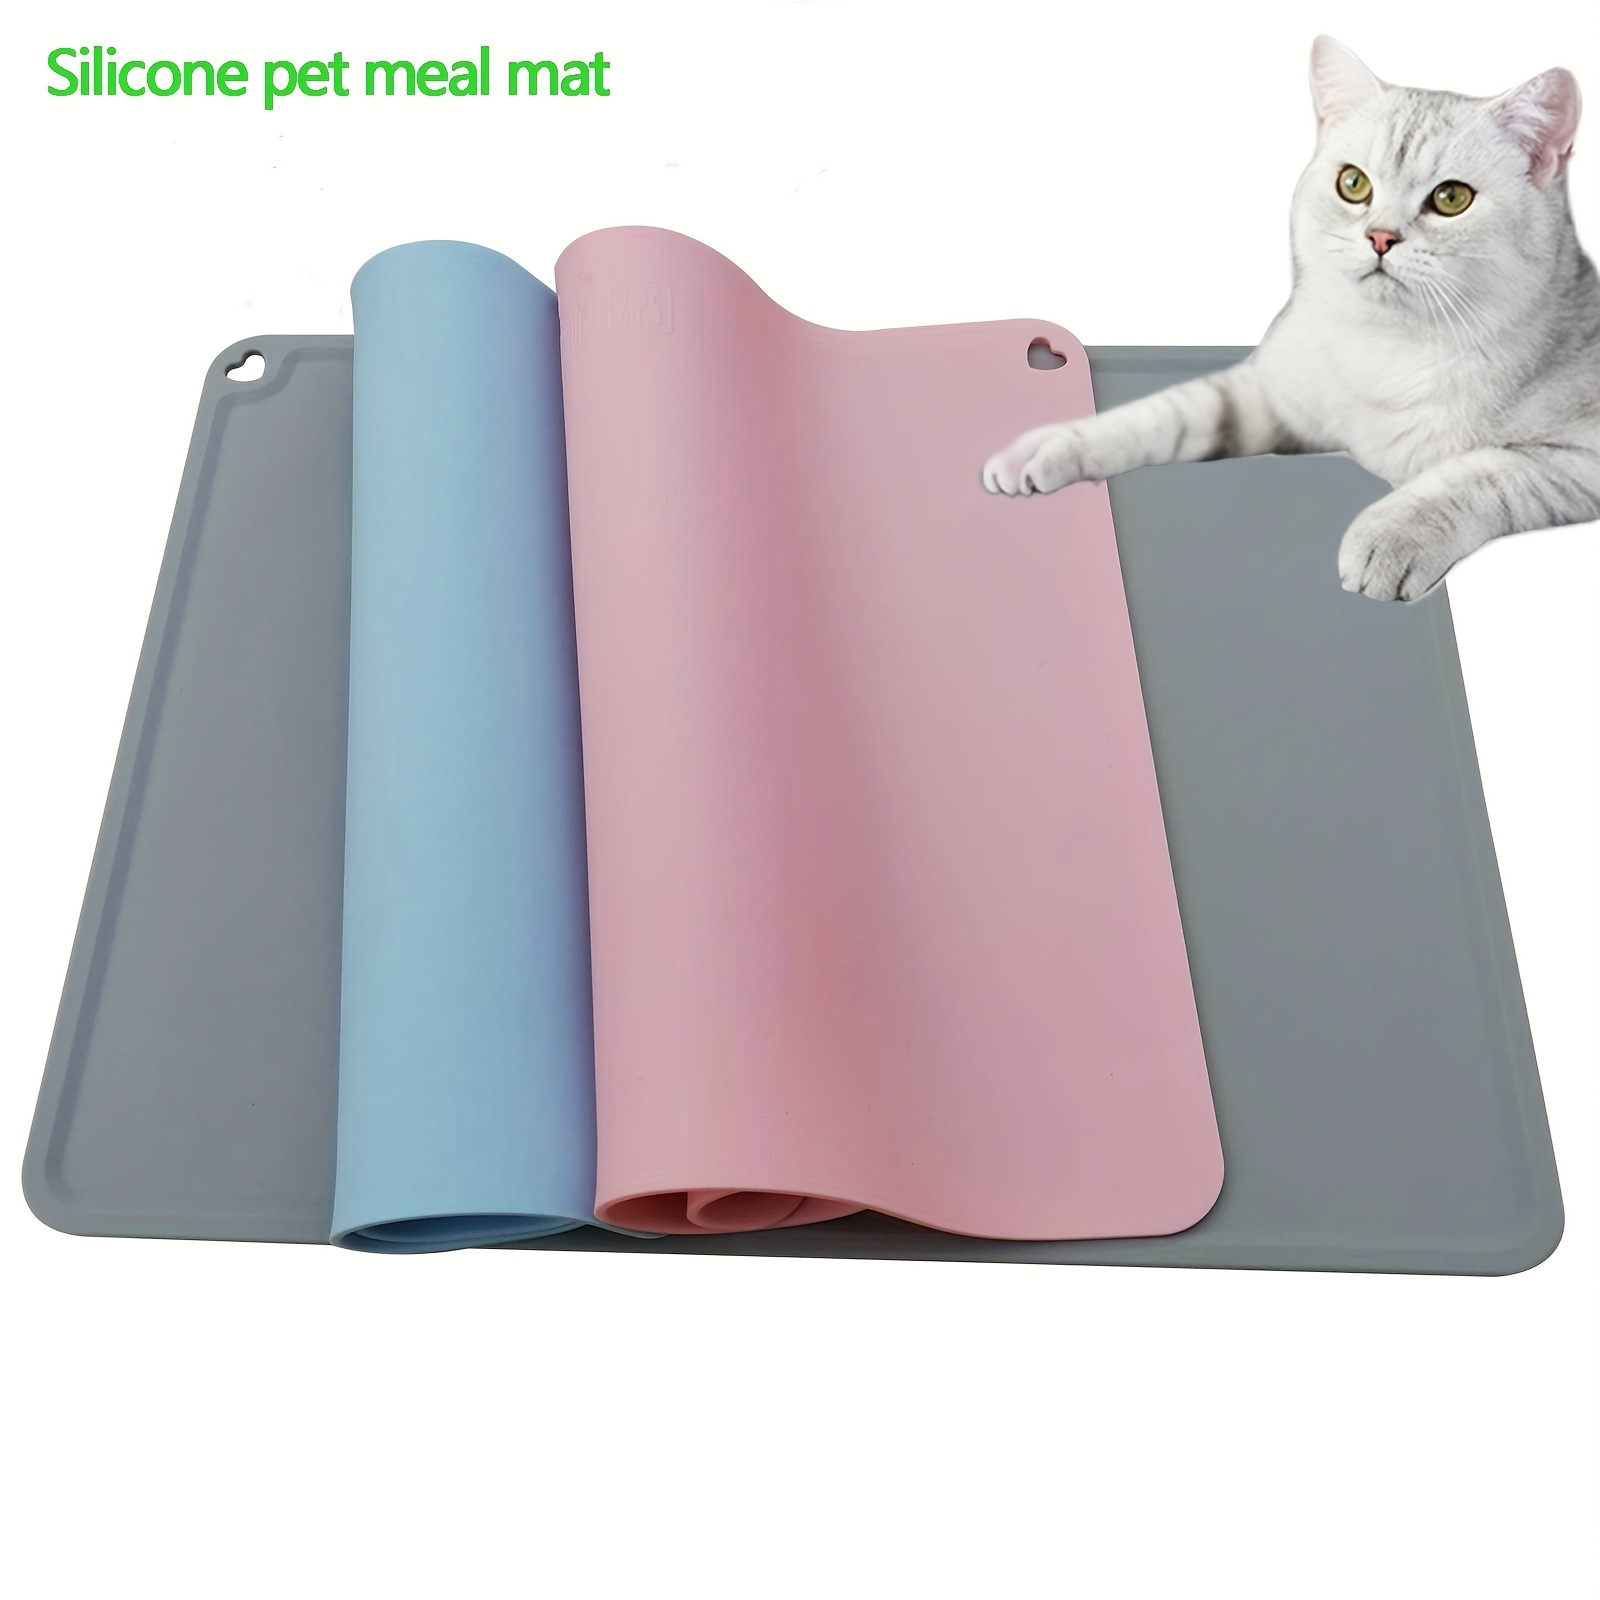 2 STÜCKE Hundenapfmatte für Hund Katze Tragbare Silikonmatte  Silikon-Tischset für Haustierfutter Wasserdichte Matte Futter Hund